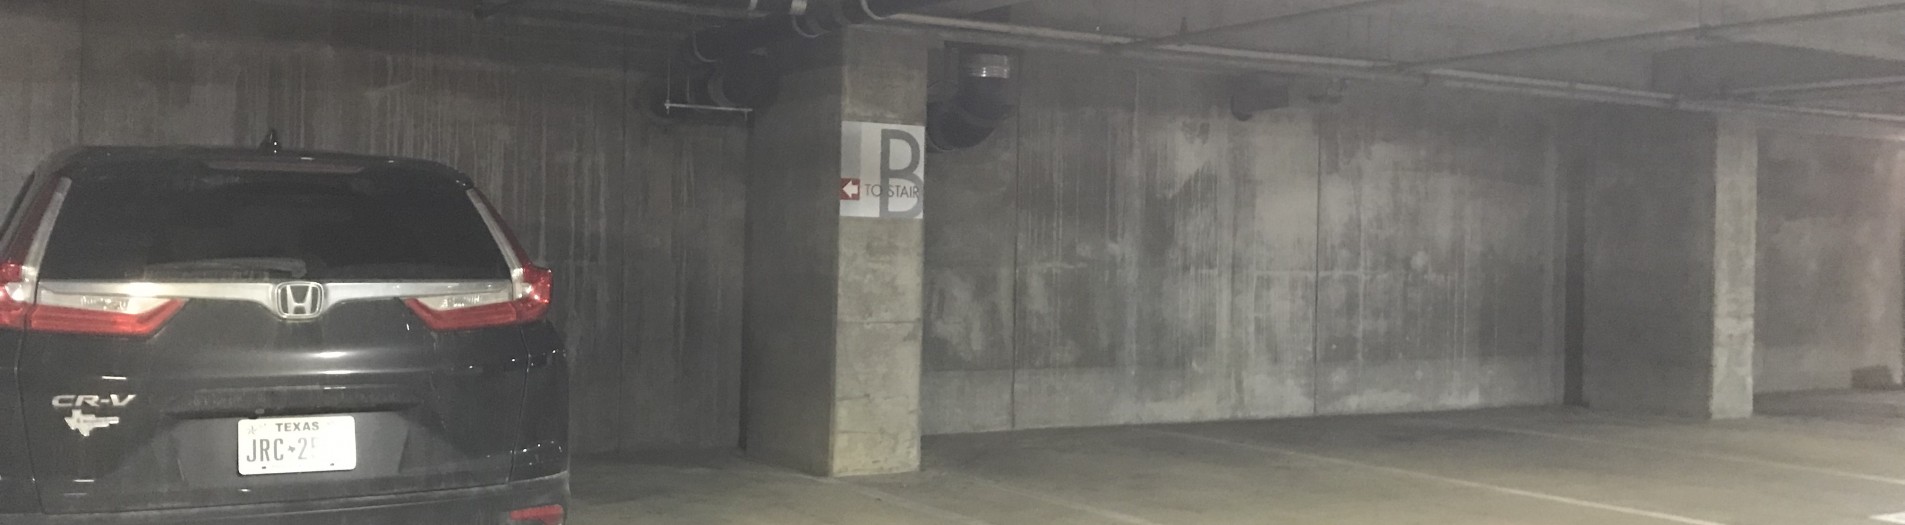 Parking Garage 1A